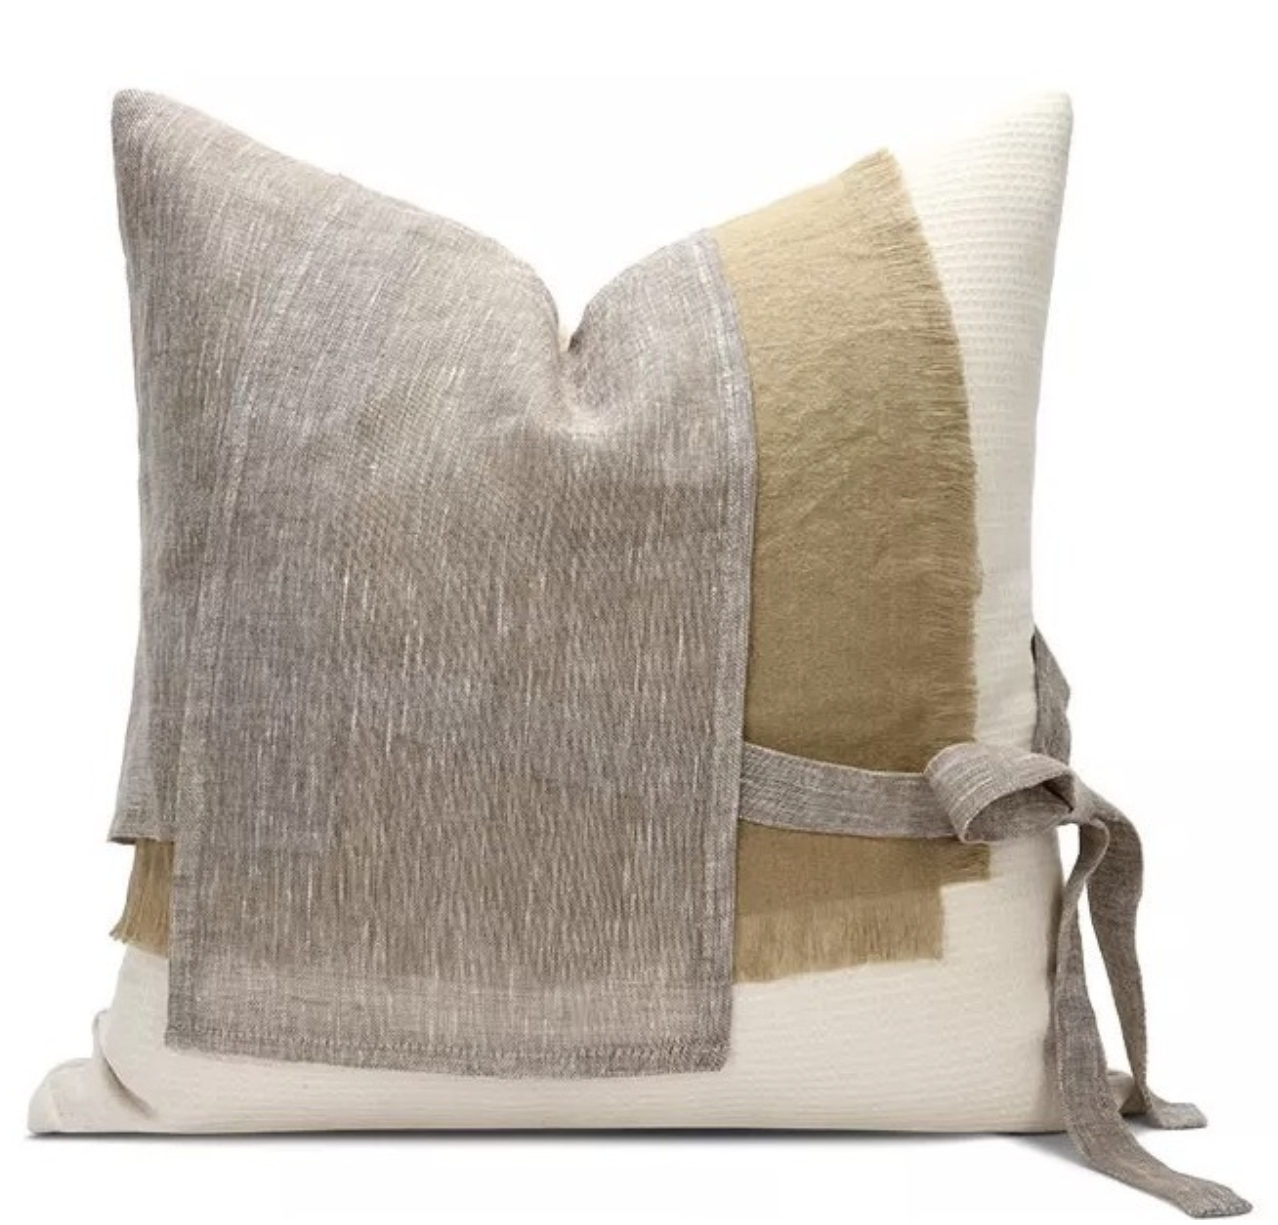 Sandy knot Pillow 14×14 Indoor